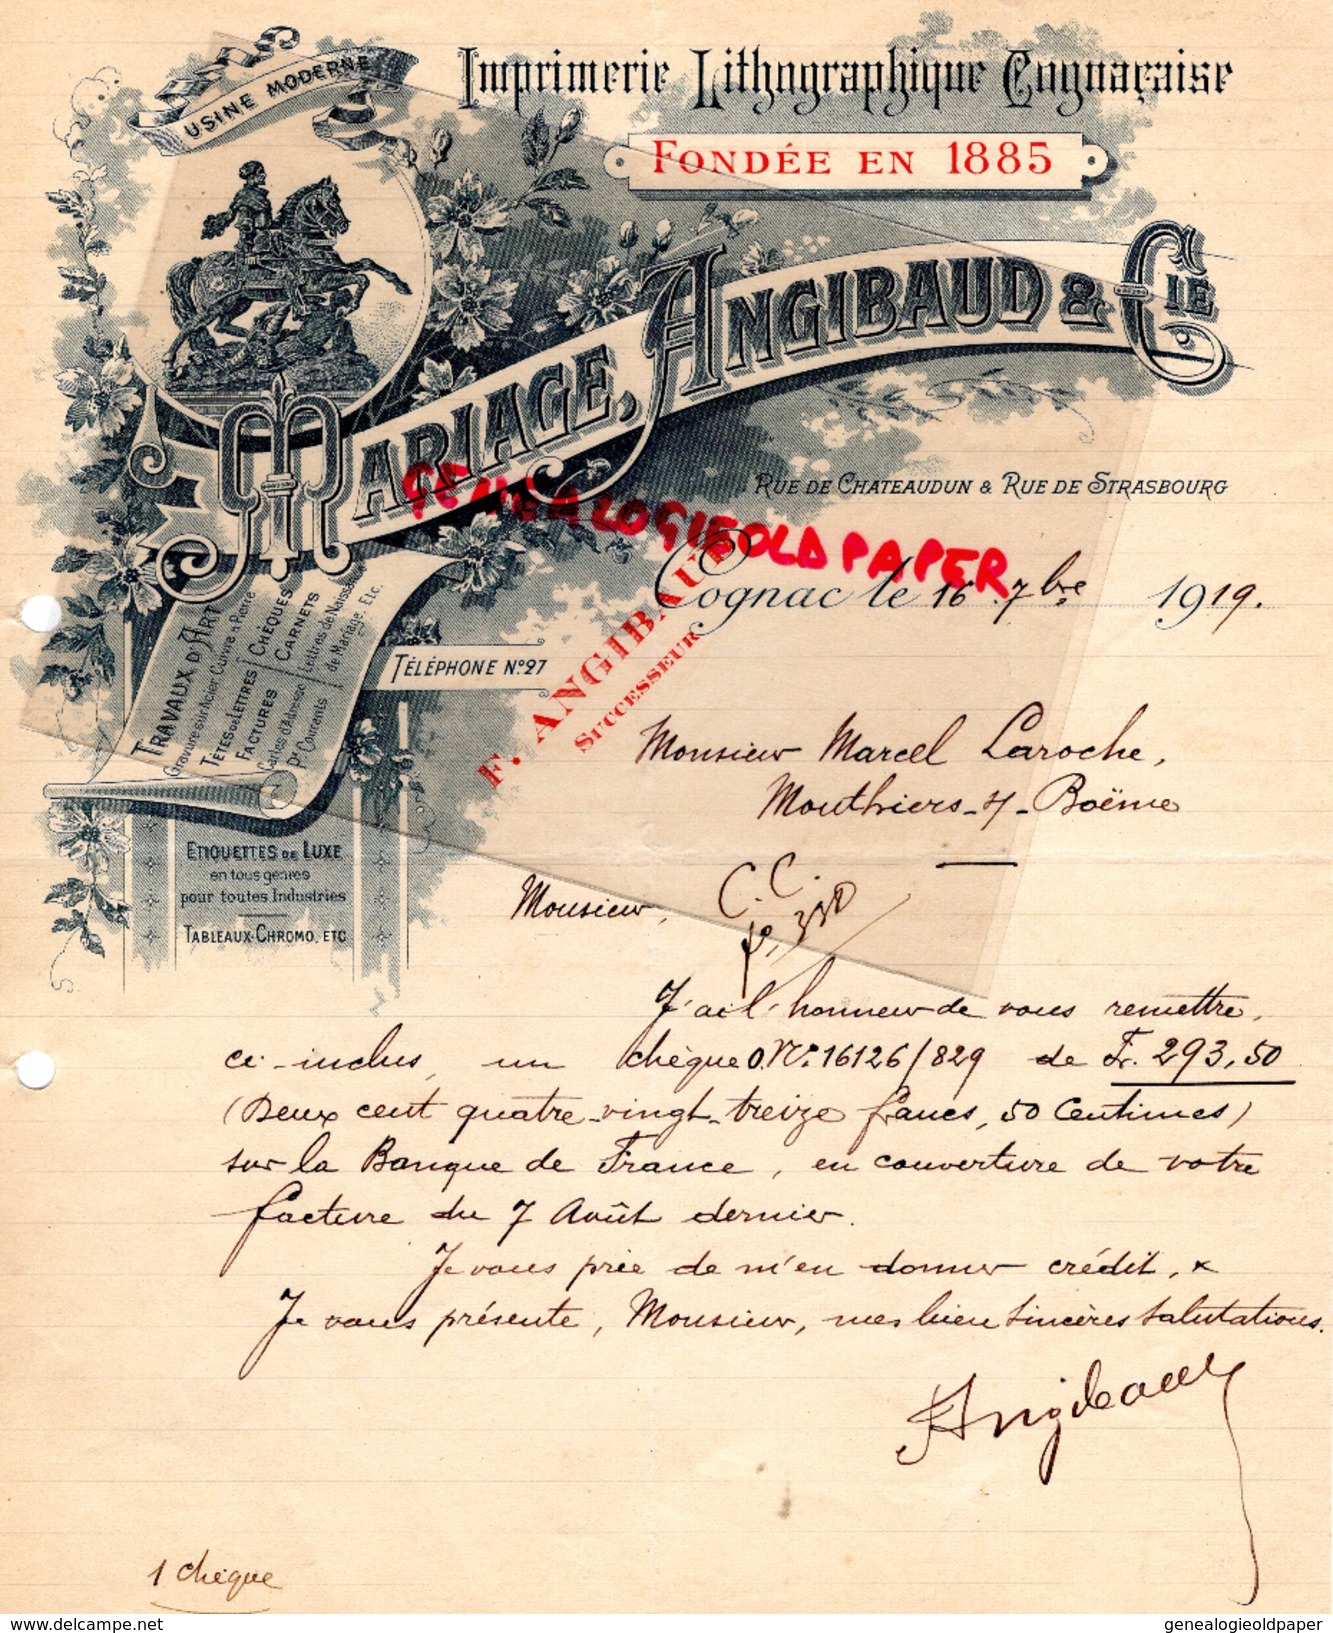 16 - COGNAC - BELLE FACTURE MARIAGE ANGIBAUD -IMPRIMERIE LITHOGRAPHIE- RUE DE CHATEAUDUN-1919 - Imprimerie & Papeterie